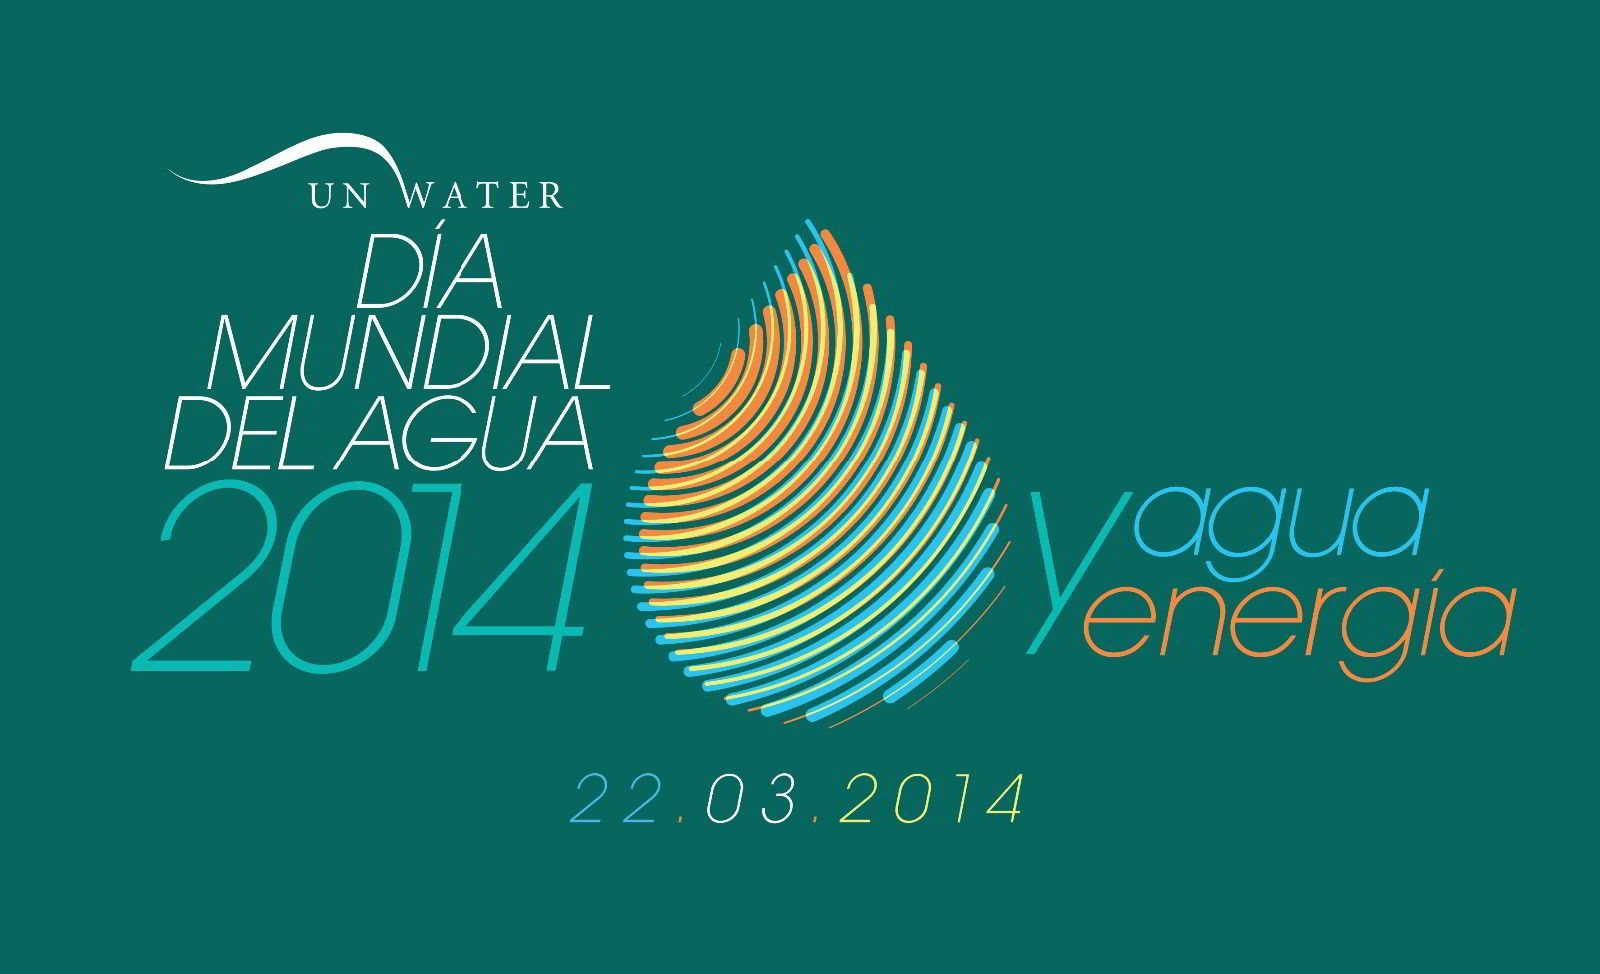 Logotipo del Día Mundial del Agua de 2014, agua y energía